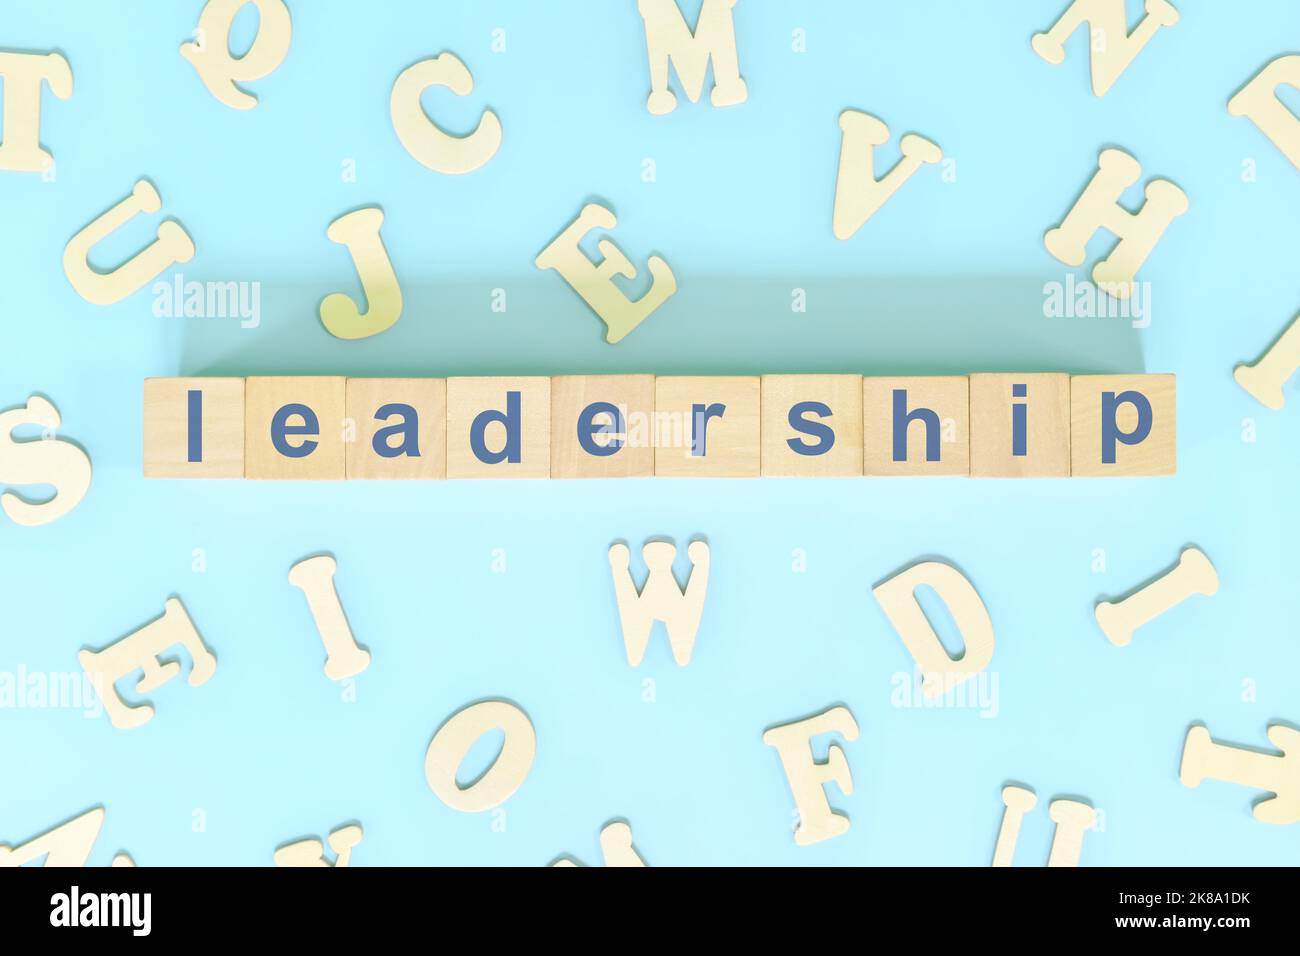 Concept de compétences de leadership dans les affaires, l'entreprise et l'organisation. Typographie de mots sur des blocs de bois à plat. Banque D'Images